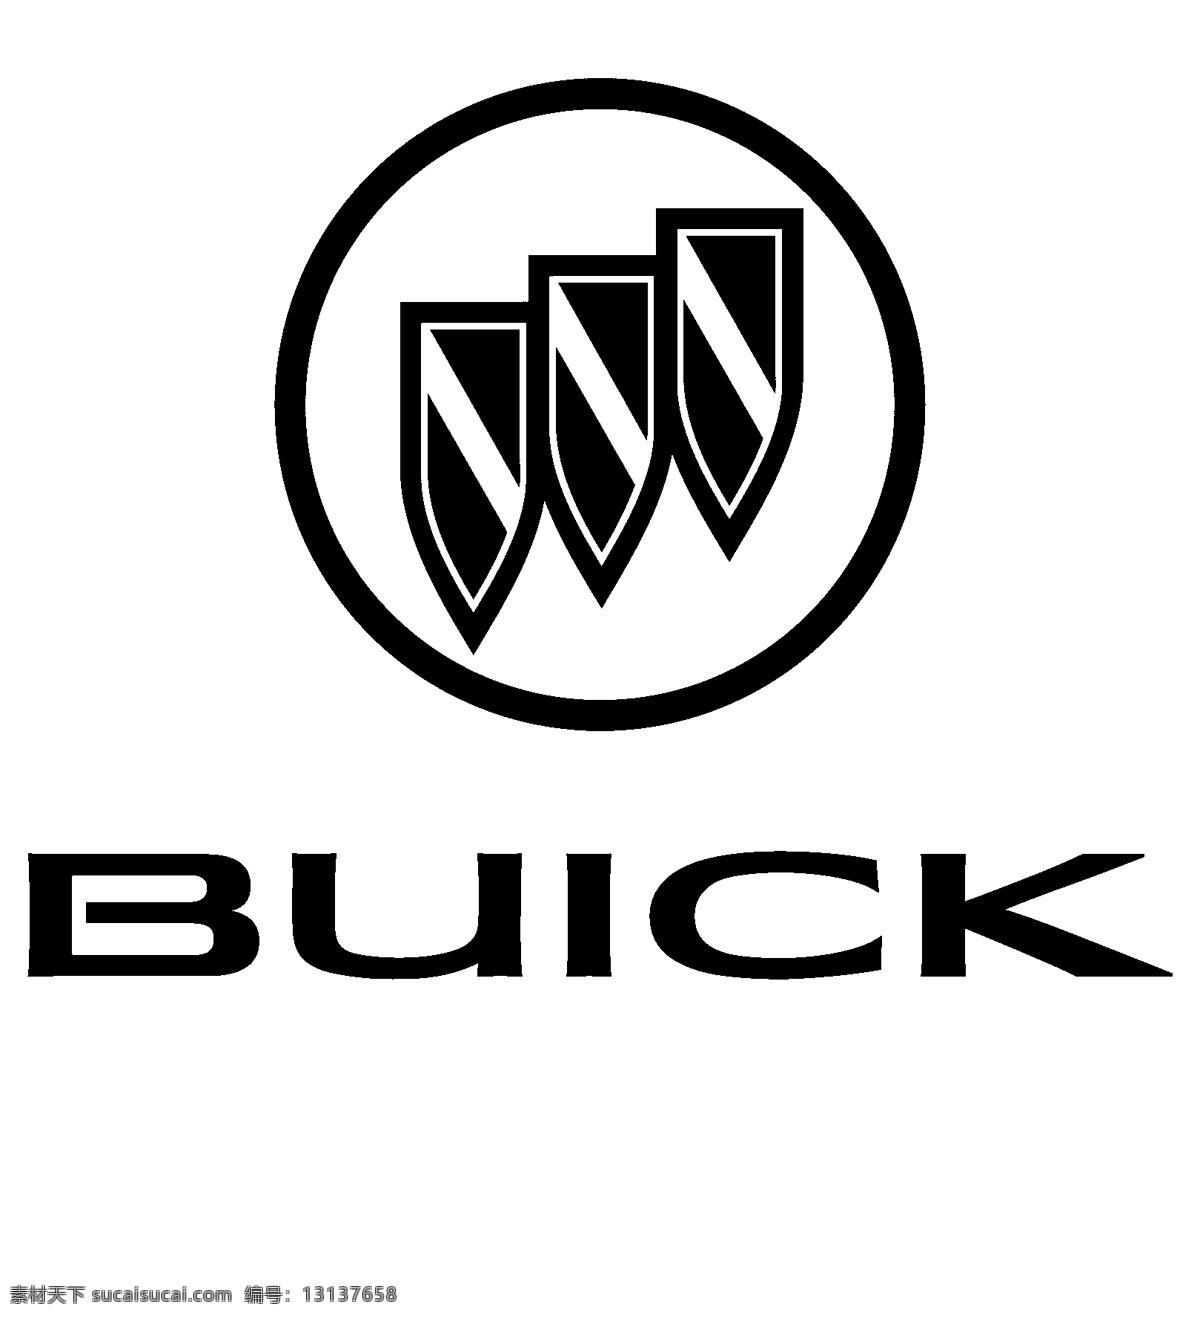 别克 汽车 buick 别克汽车 bieke 汽车logo 图标 标志图标 企业 logo 标志